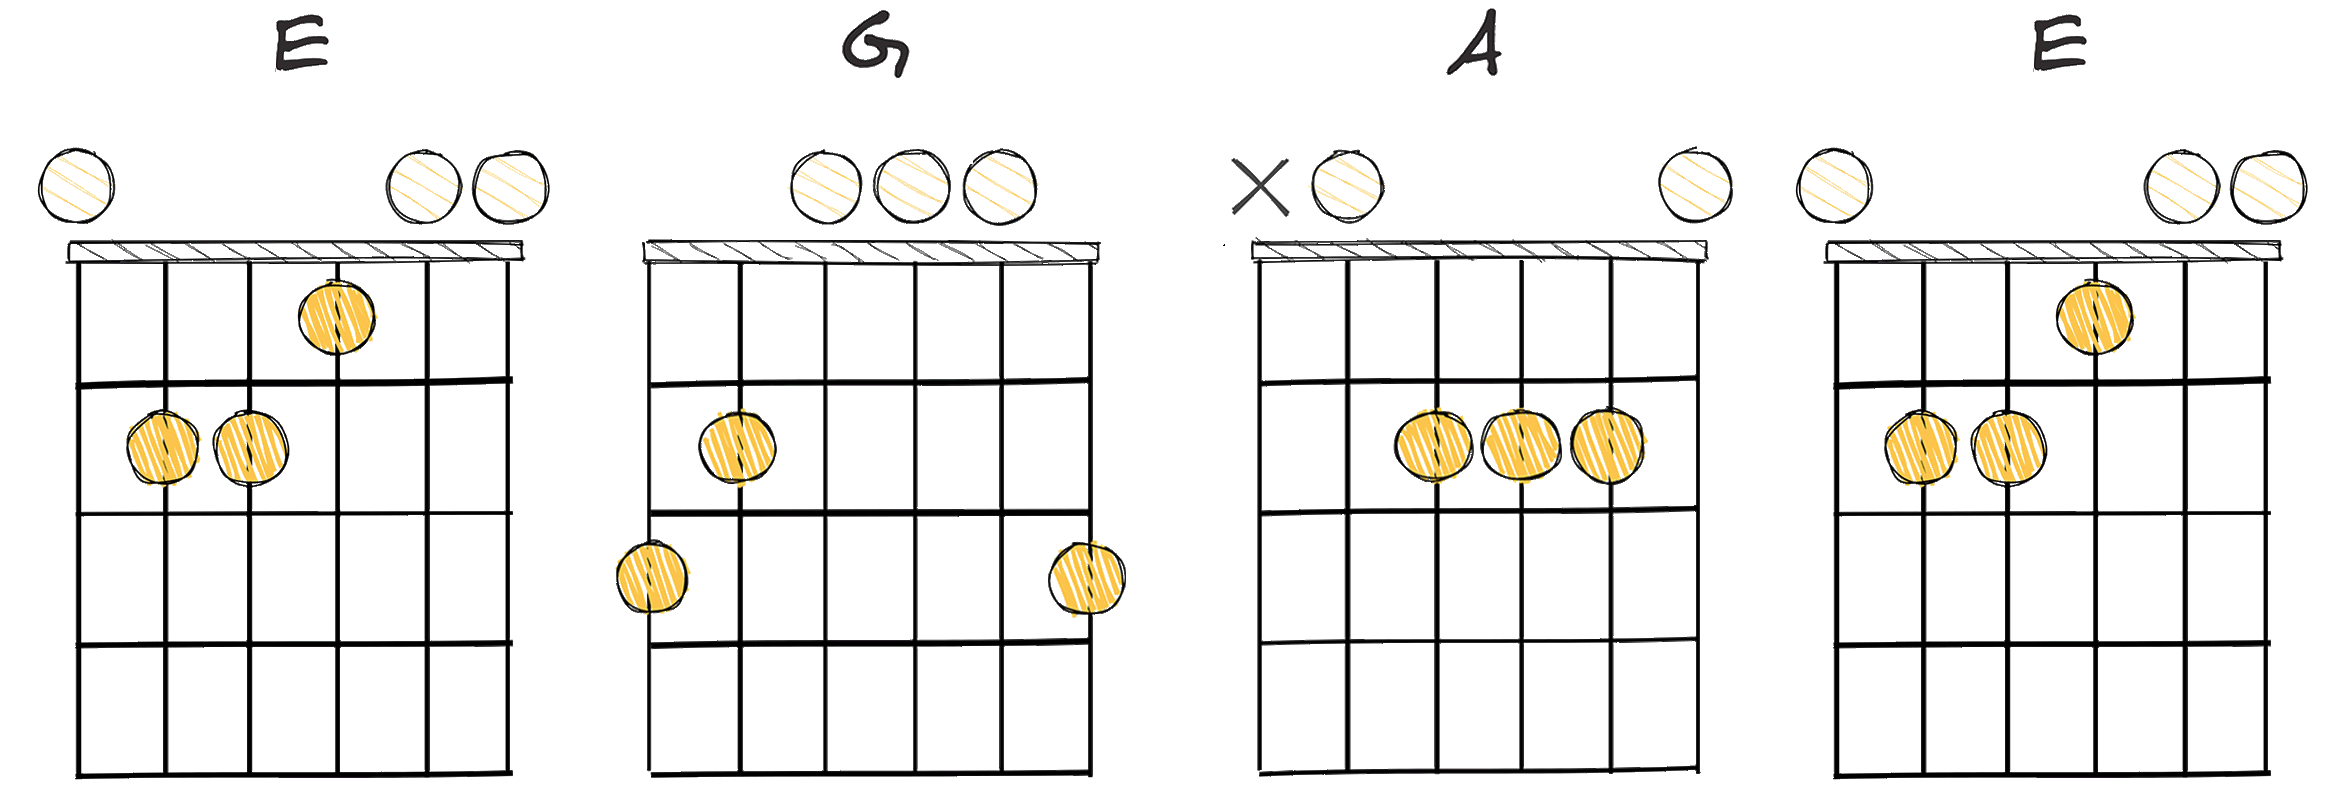 II-IV-V-II (2-4-5-2) chords diagram